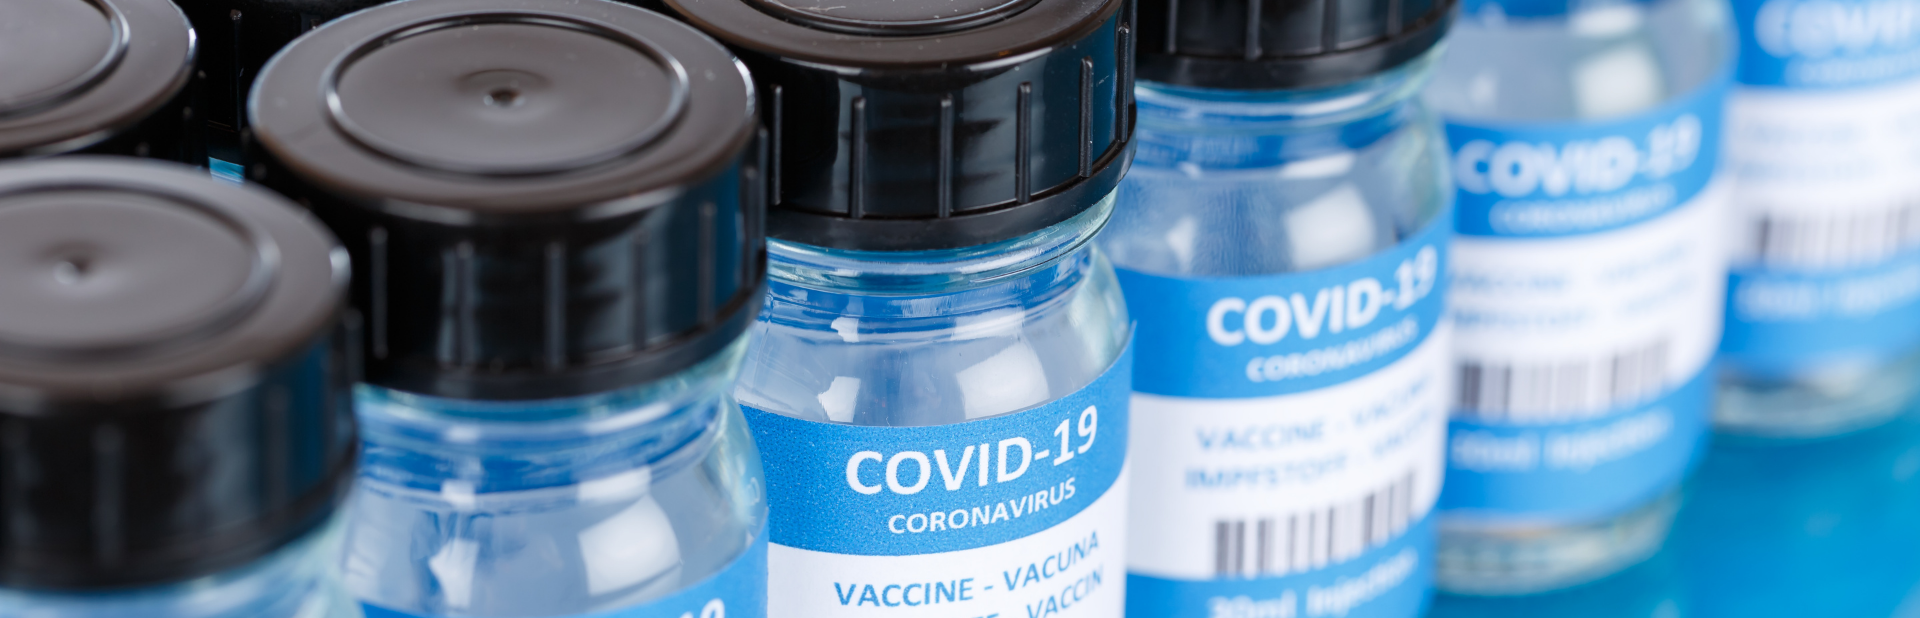 vaccino covid-19 coronavirus terza dose booster centro clinico nemo vax covid19 3 dosi greenpass 04